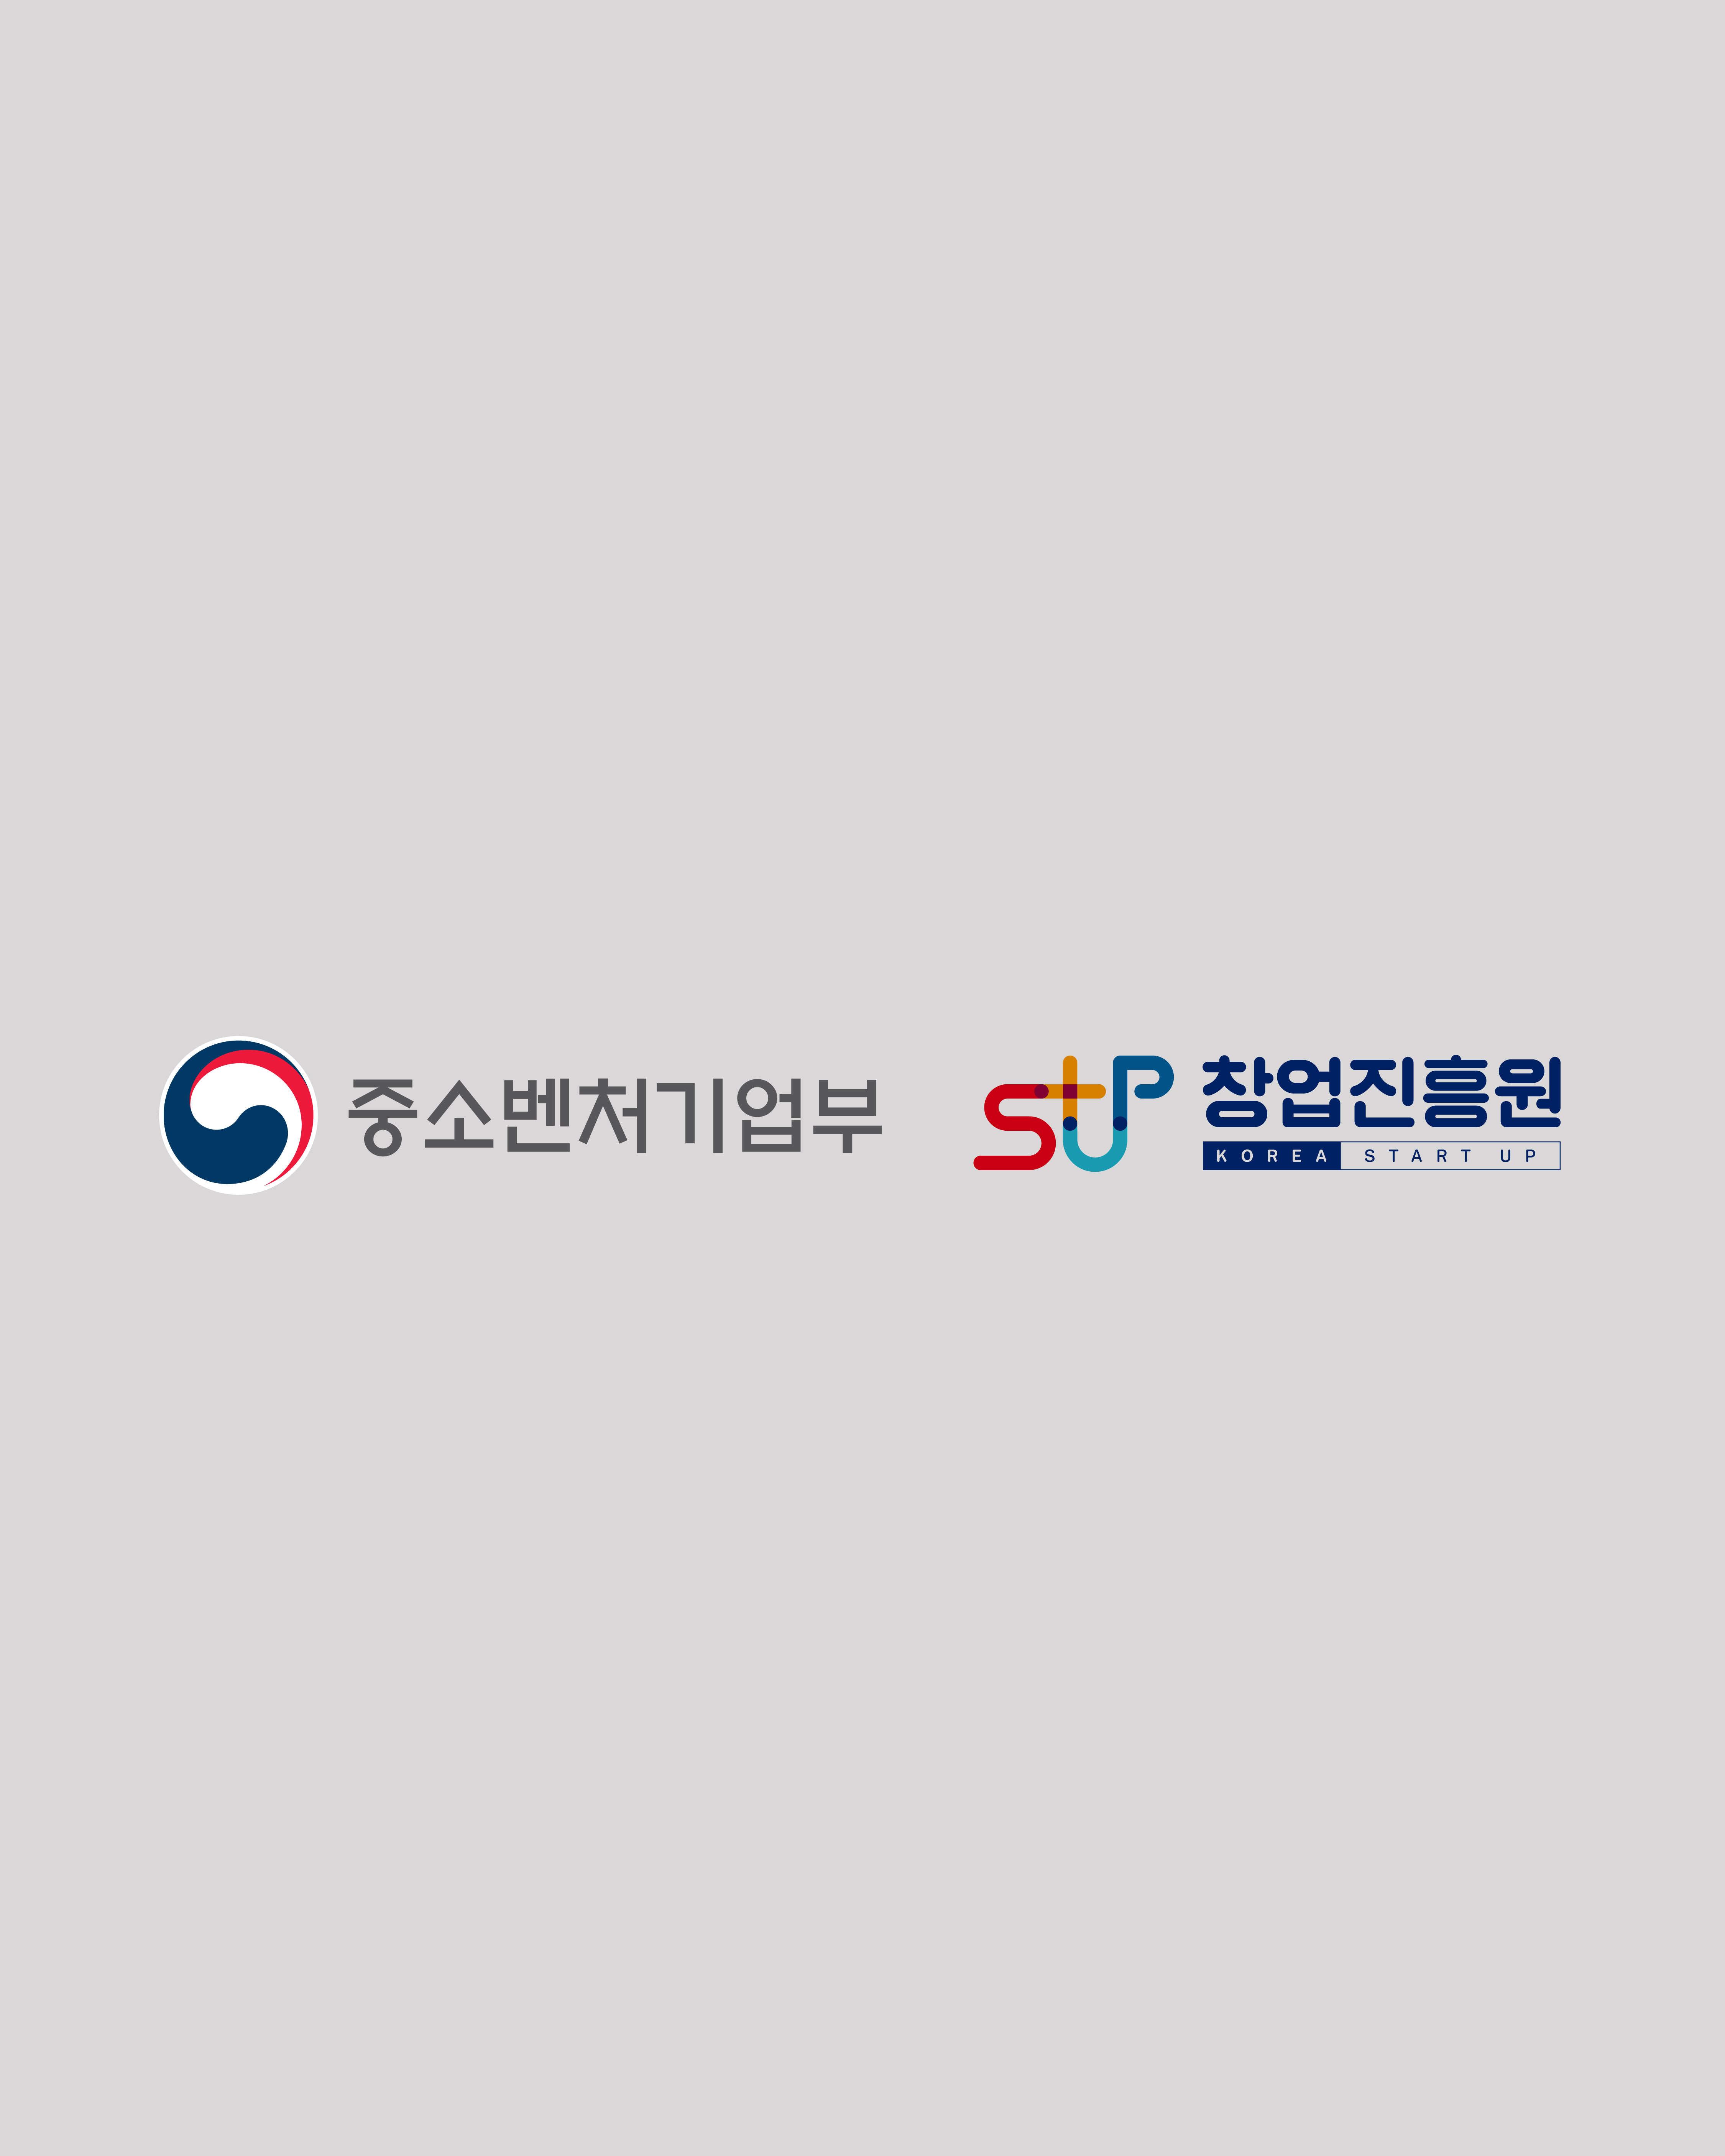 중소벤처기업부(로고), 창업진흥원(로고)